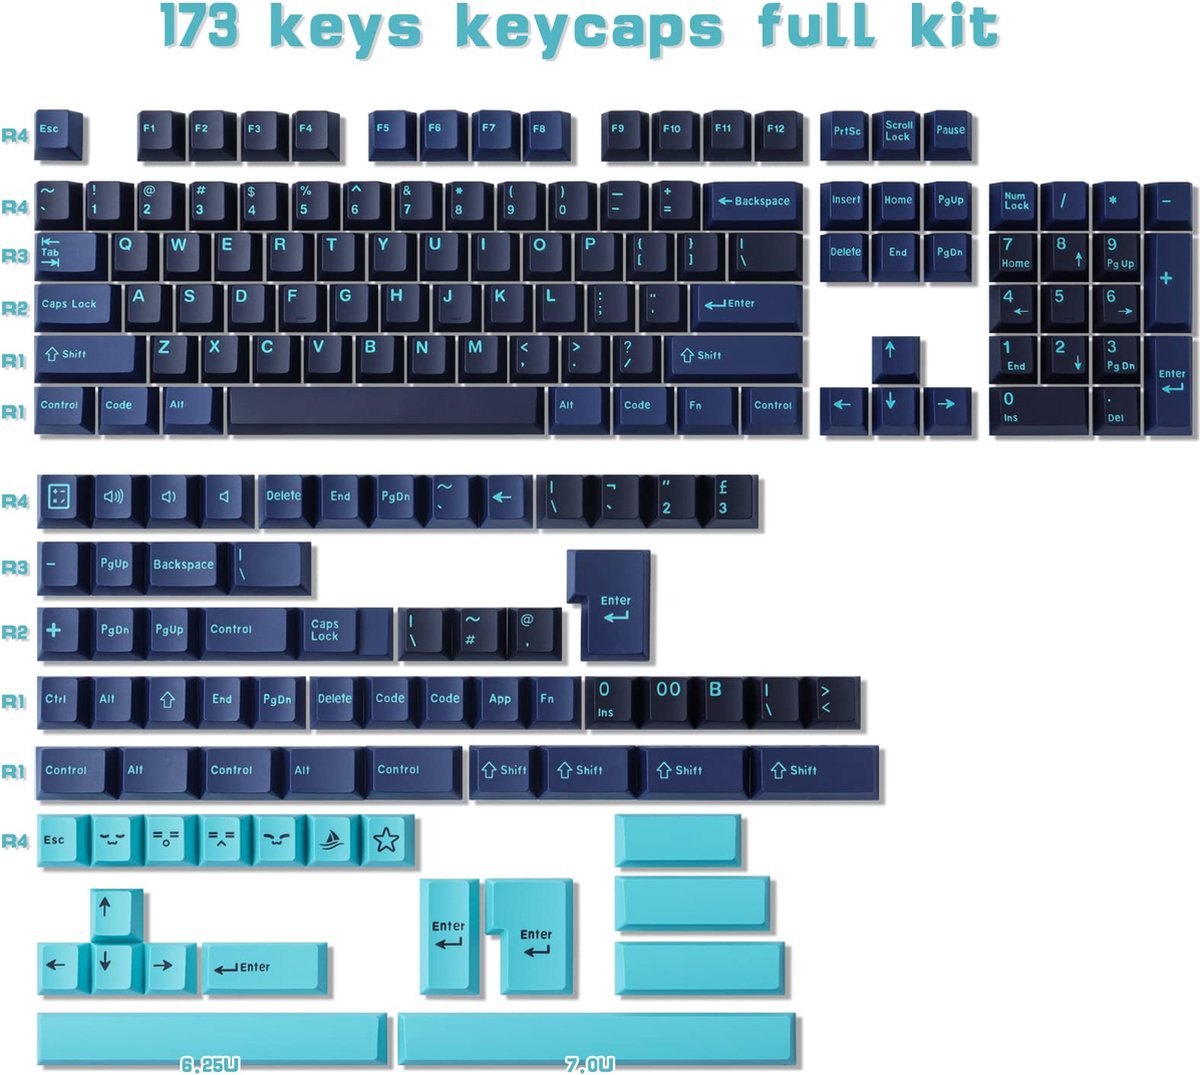 Beroli - Keycaps - Dubbel-shot ABS Keycaps - 173 Toetsen - Cherry Profiel - Aangepaste Keycaps voor ANSI (US) & ISO (UK) Lay-out - Cherry MX Gateron Schakelaars - Mechanische Toetsenbord